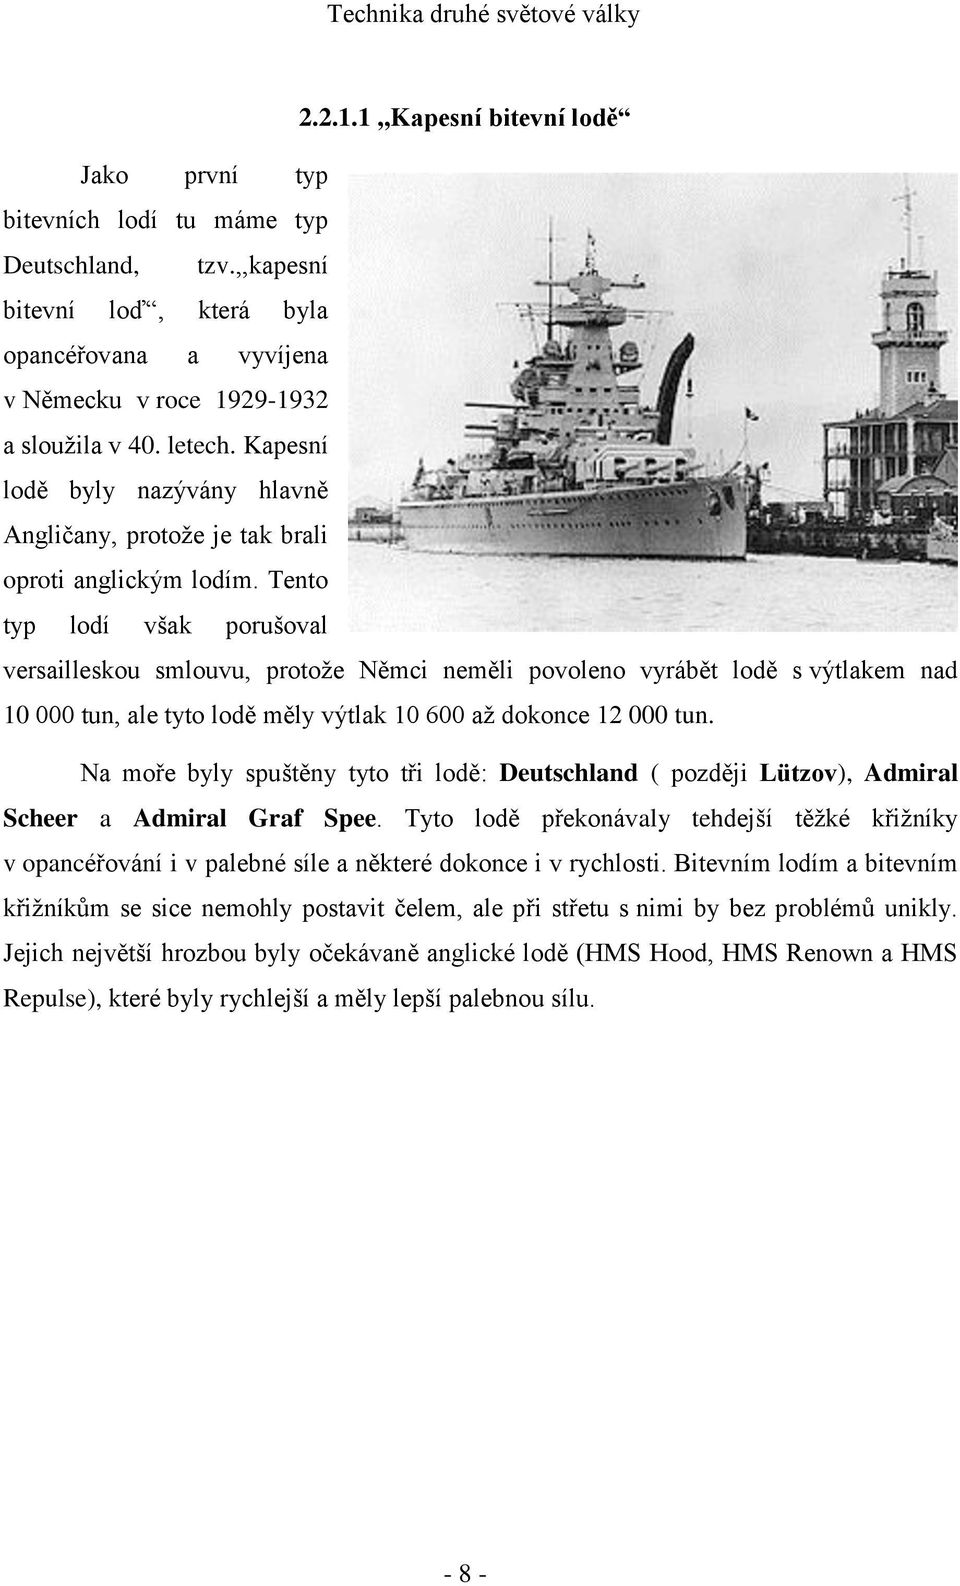 Tento typ lodí však porušoval versailleskou smlouvu, protože Němci neměli povoleno vyrábět lodě s výtlakem nad 10 000 tun, ale tyto lodě měly výtlak 10 600 až dokonce 12 000 tun.